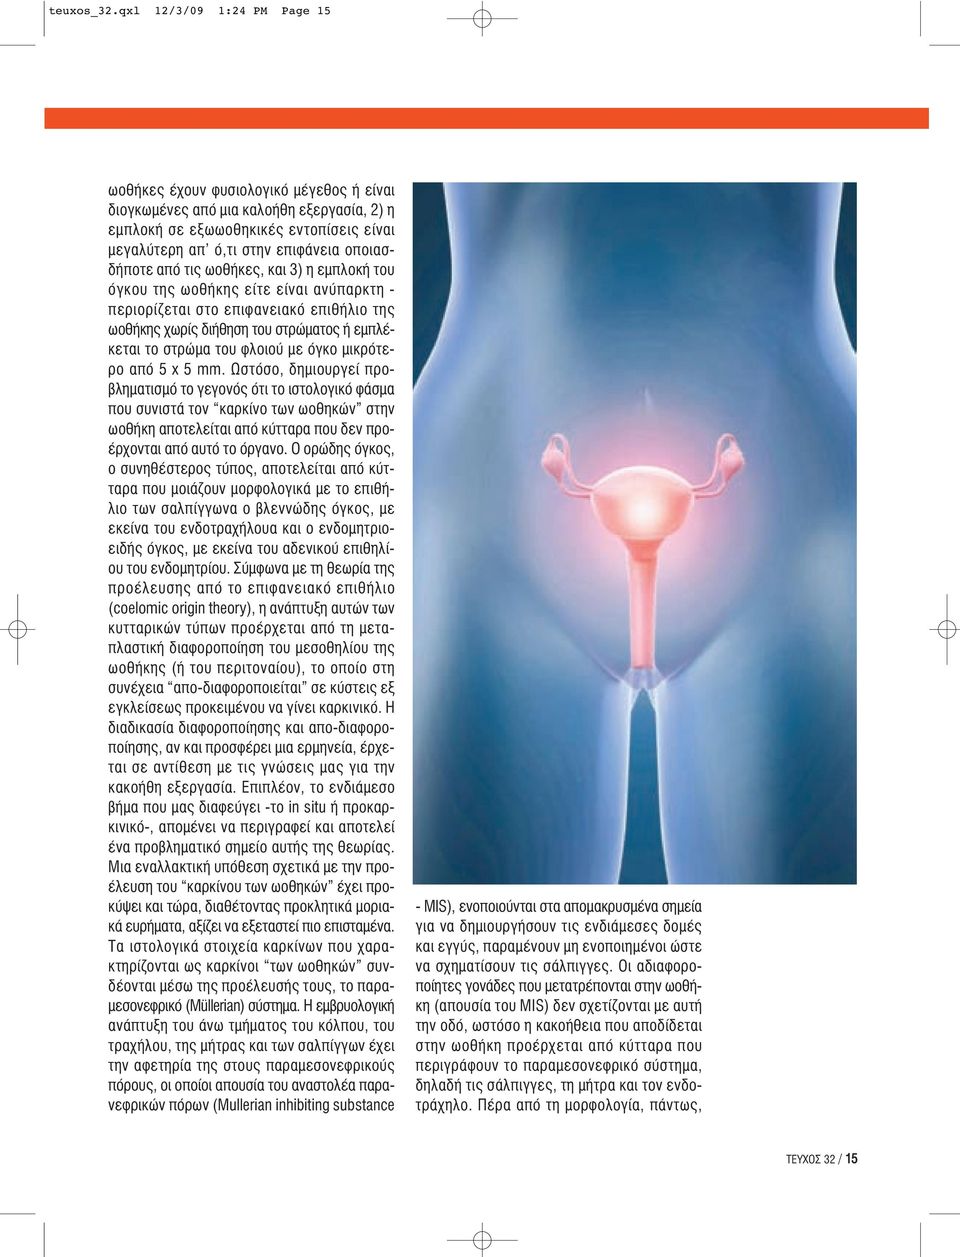 οποιασδήποτε από τις ωοθήκες, και 3) η εμπλοκή του όγκου της ωοθήκης είτε είναι ανύπαρκτη - περιορίζεται στο επιφανειακό επιθήλιο της ωοθήκης χωρίς διήθηση του στρώματος ή εμπλέκεται το στρώμα του